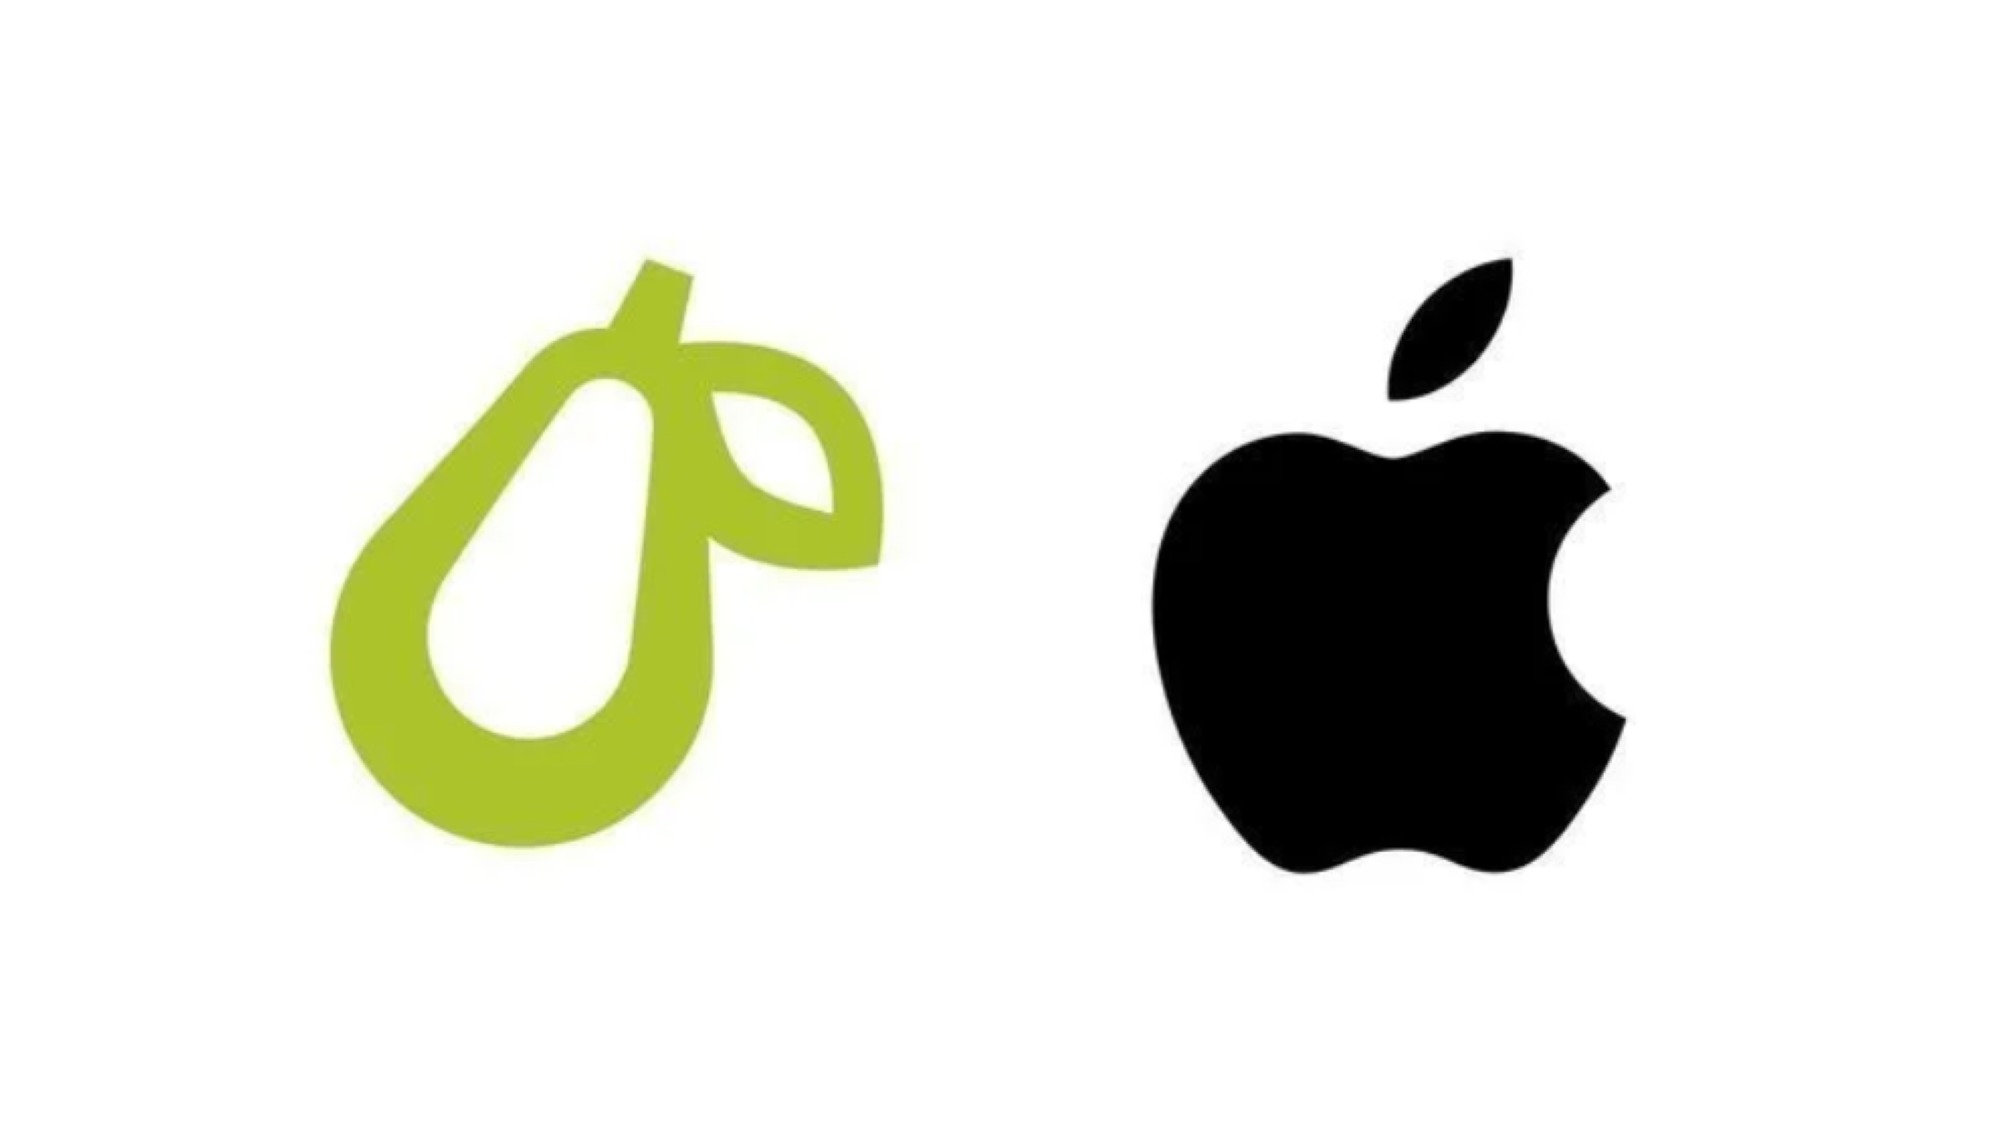 Логотипы компаний